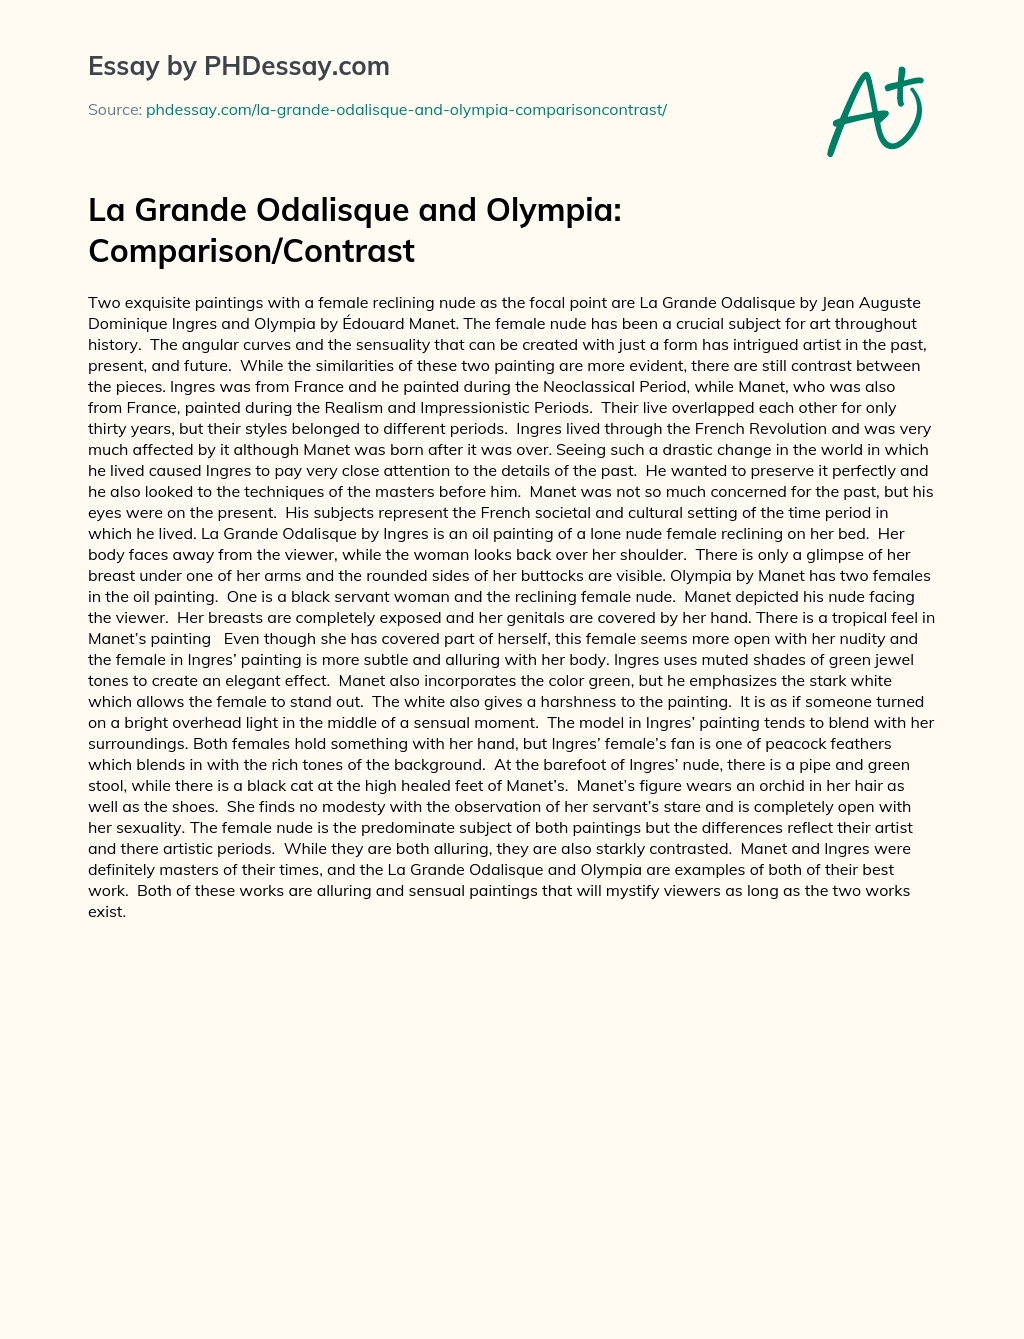 La Grande Odalisque and Olympia: Comparison/Contrast essay